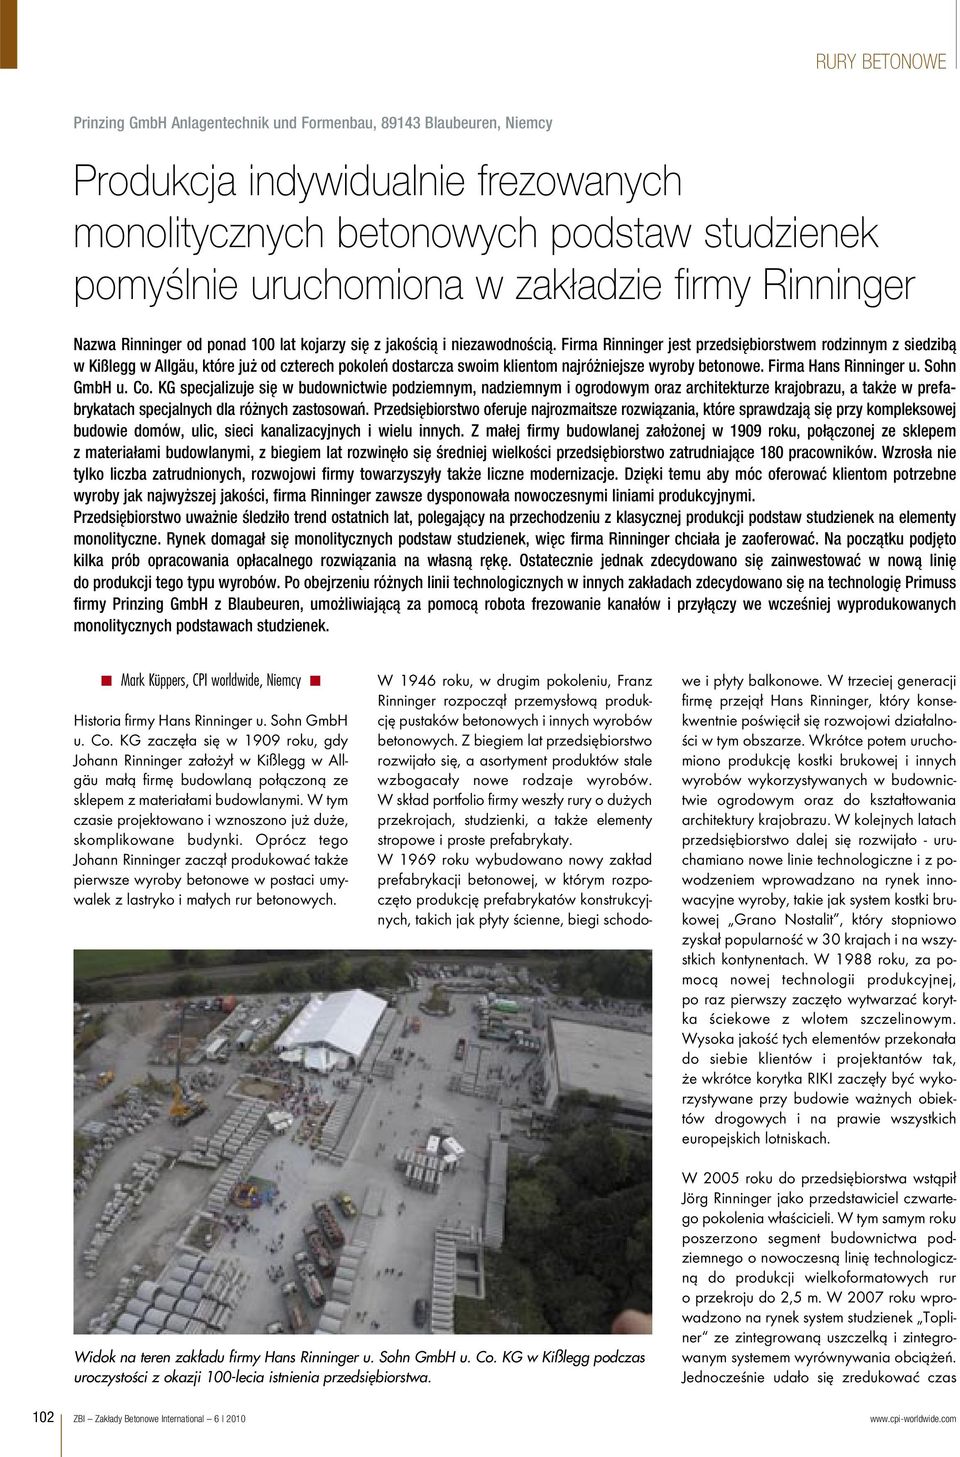 Firma Rinninger jest przedsiębiorstwem rodzinnym z siedzibą w Kißlegg w Allgäu, które już od czterech pokoleń dostarcza swoim klientom najróżniejsze wyroby betonowe. Firma Hans Rinninger u.